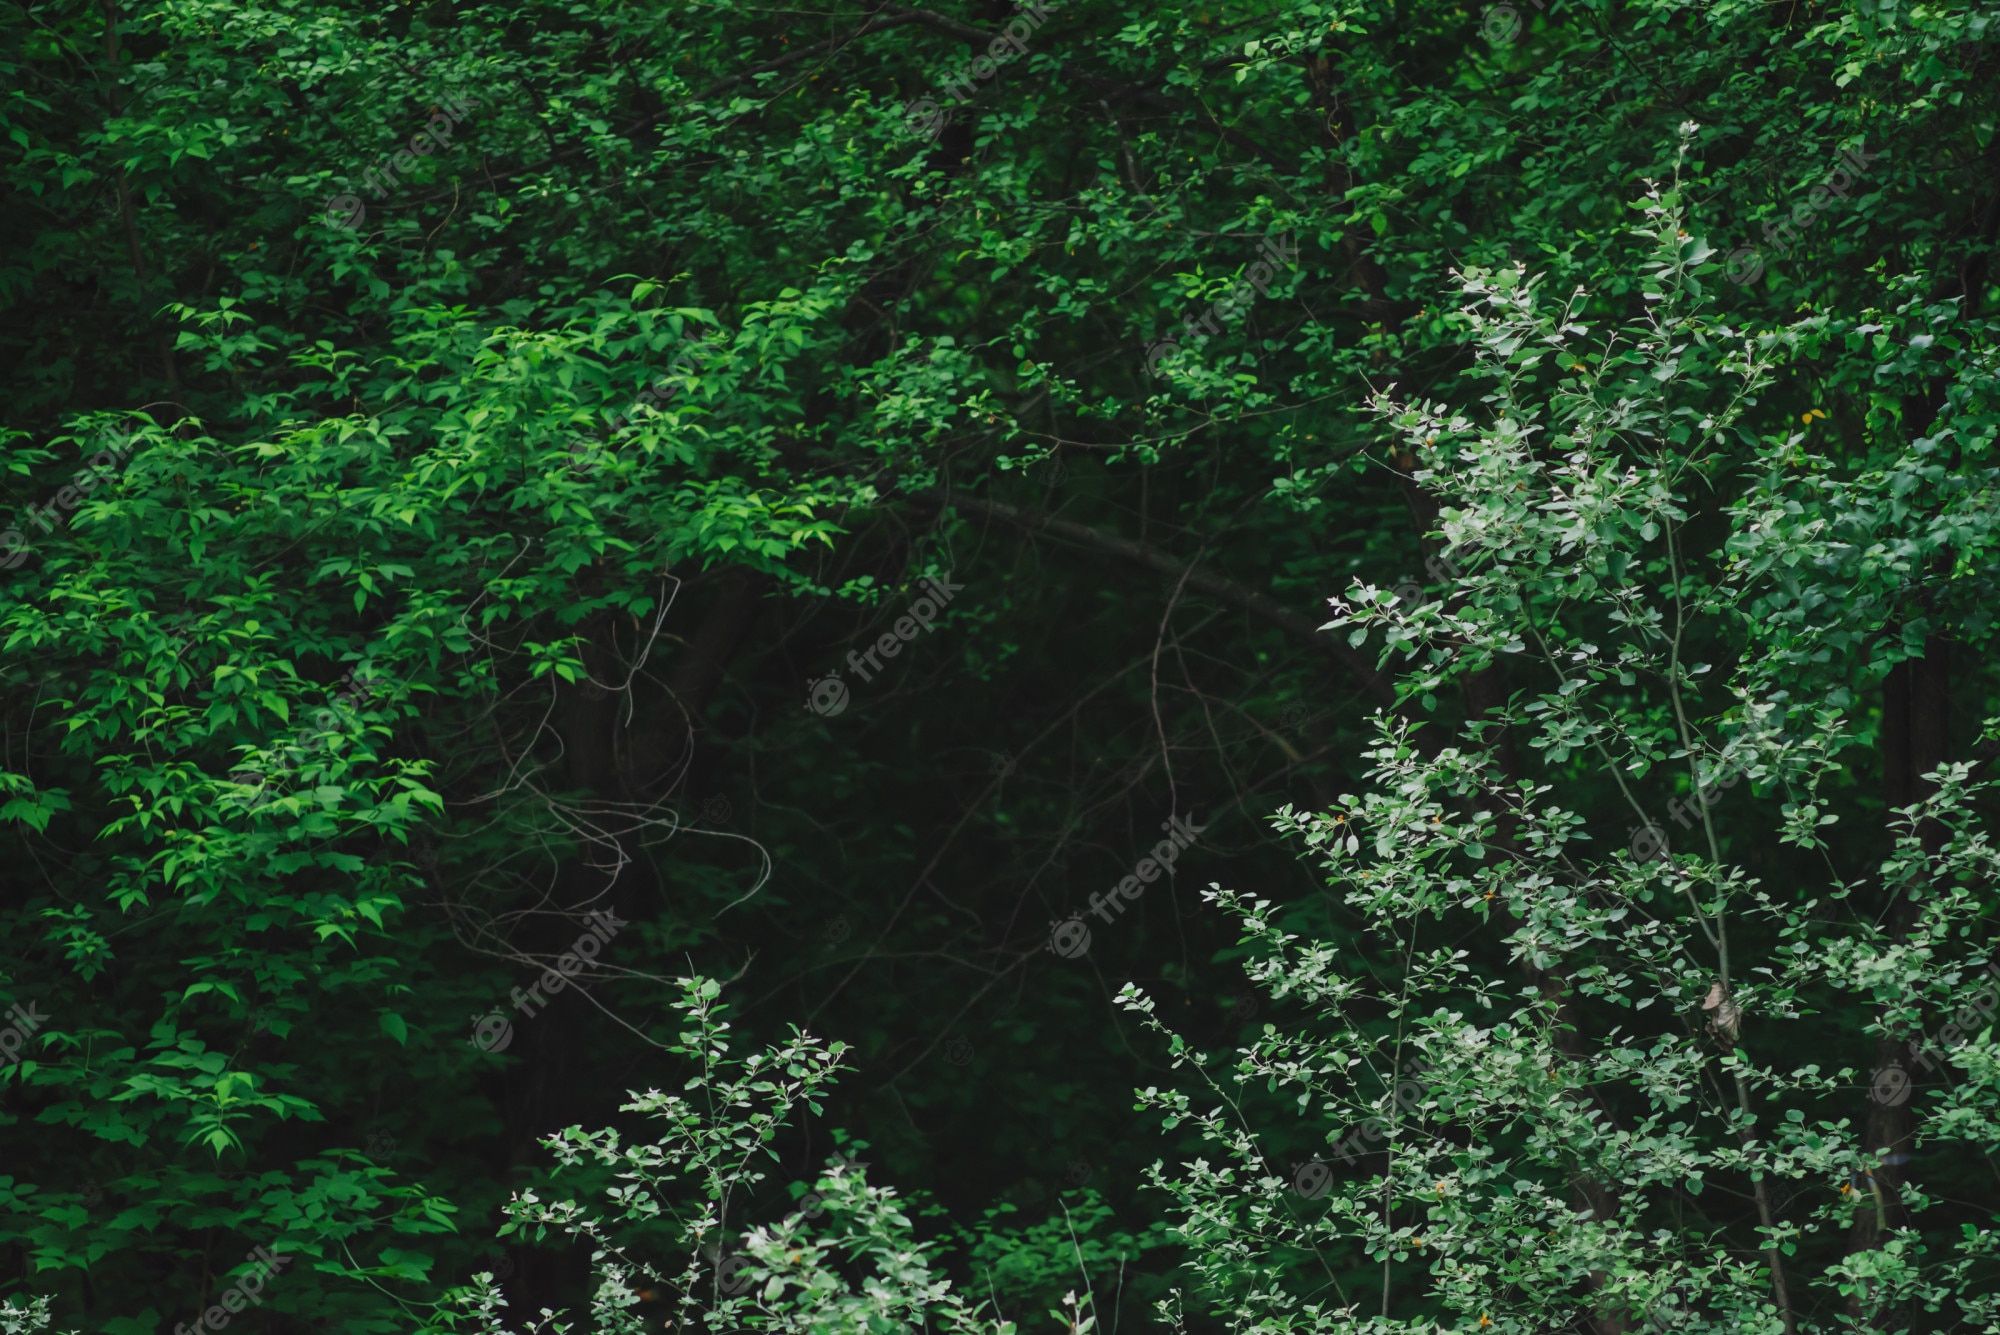  Wald Hintergrundbild 2000x1335. Natürlicher grüner hintergrund von üppigen dickichten im dunklen wald. dunkelheit hinter verzauberten zweigen mysteriöser bäume mit kopierraum. unheimliche waldkulisse mit mystischem grün. tenebrous waldnahaufnahme